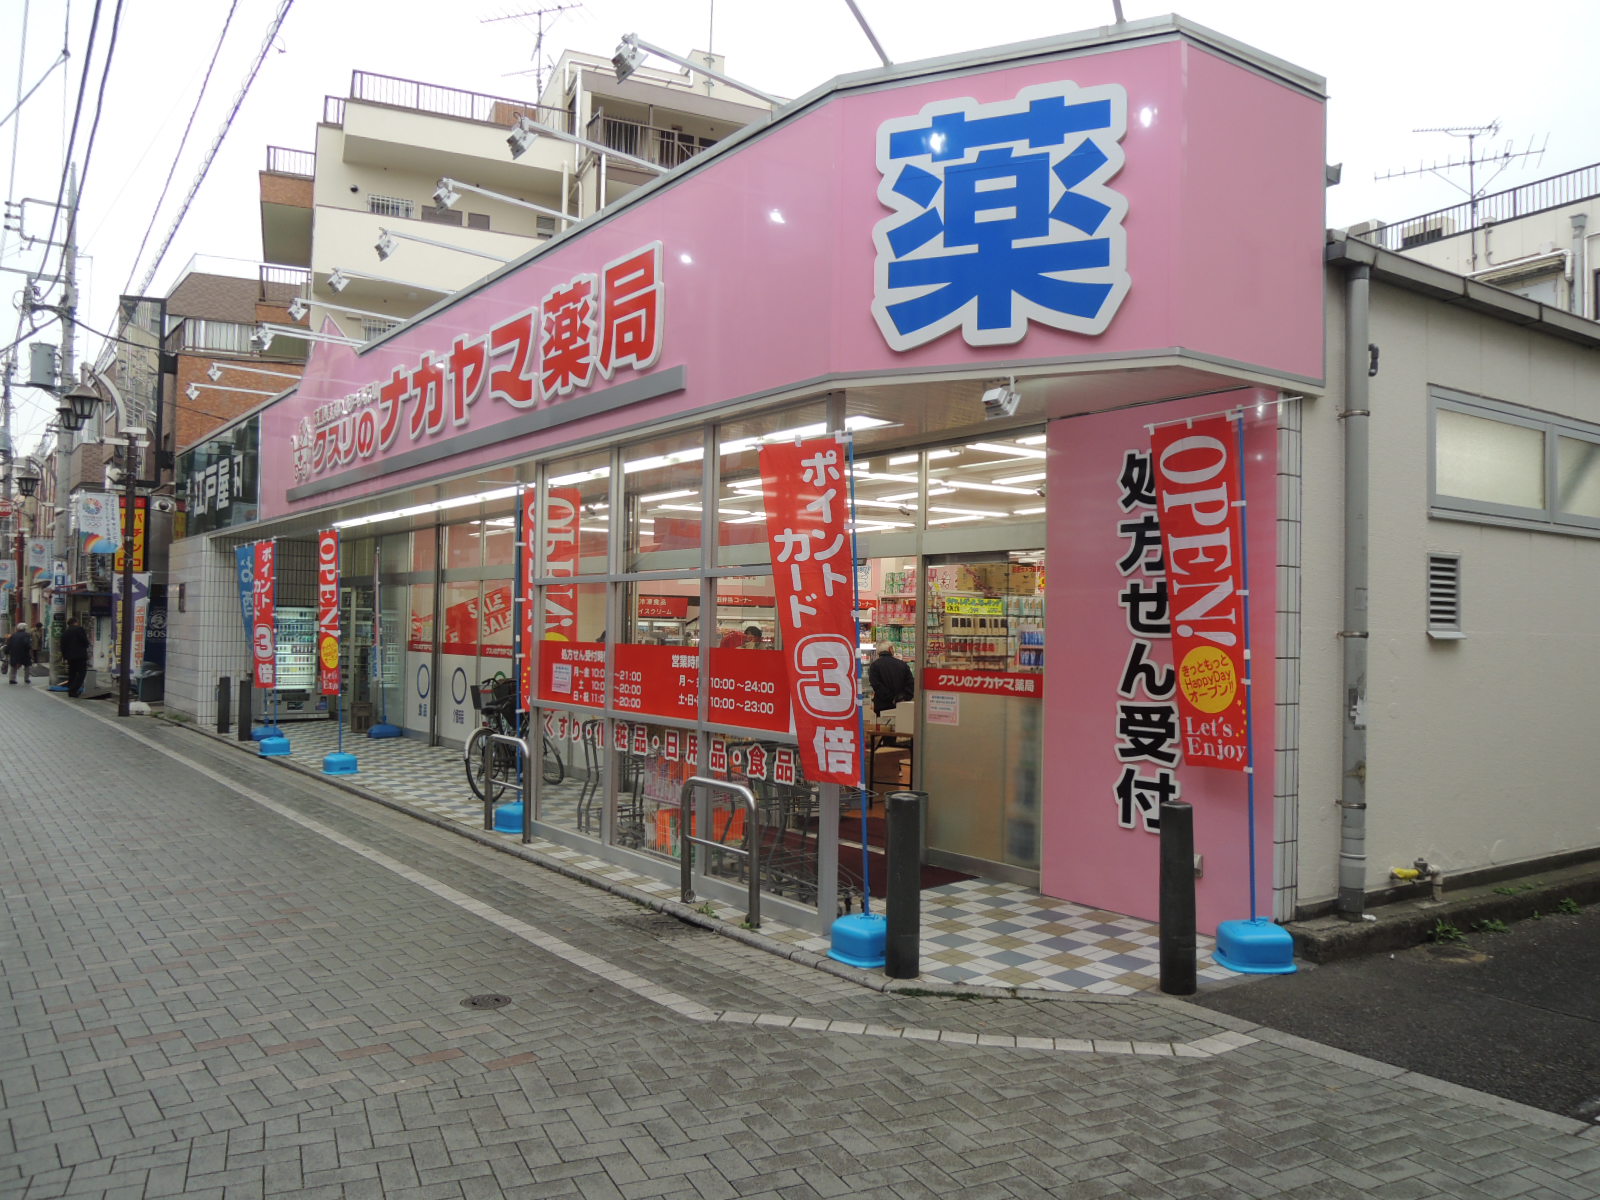 Supermarket. Nakayama & Edoya to (super) 74m